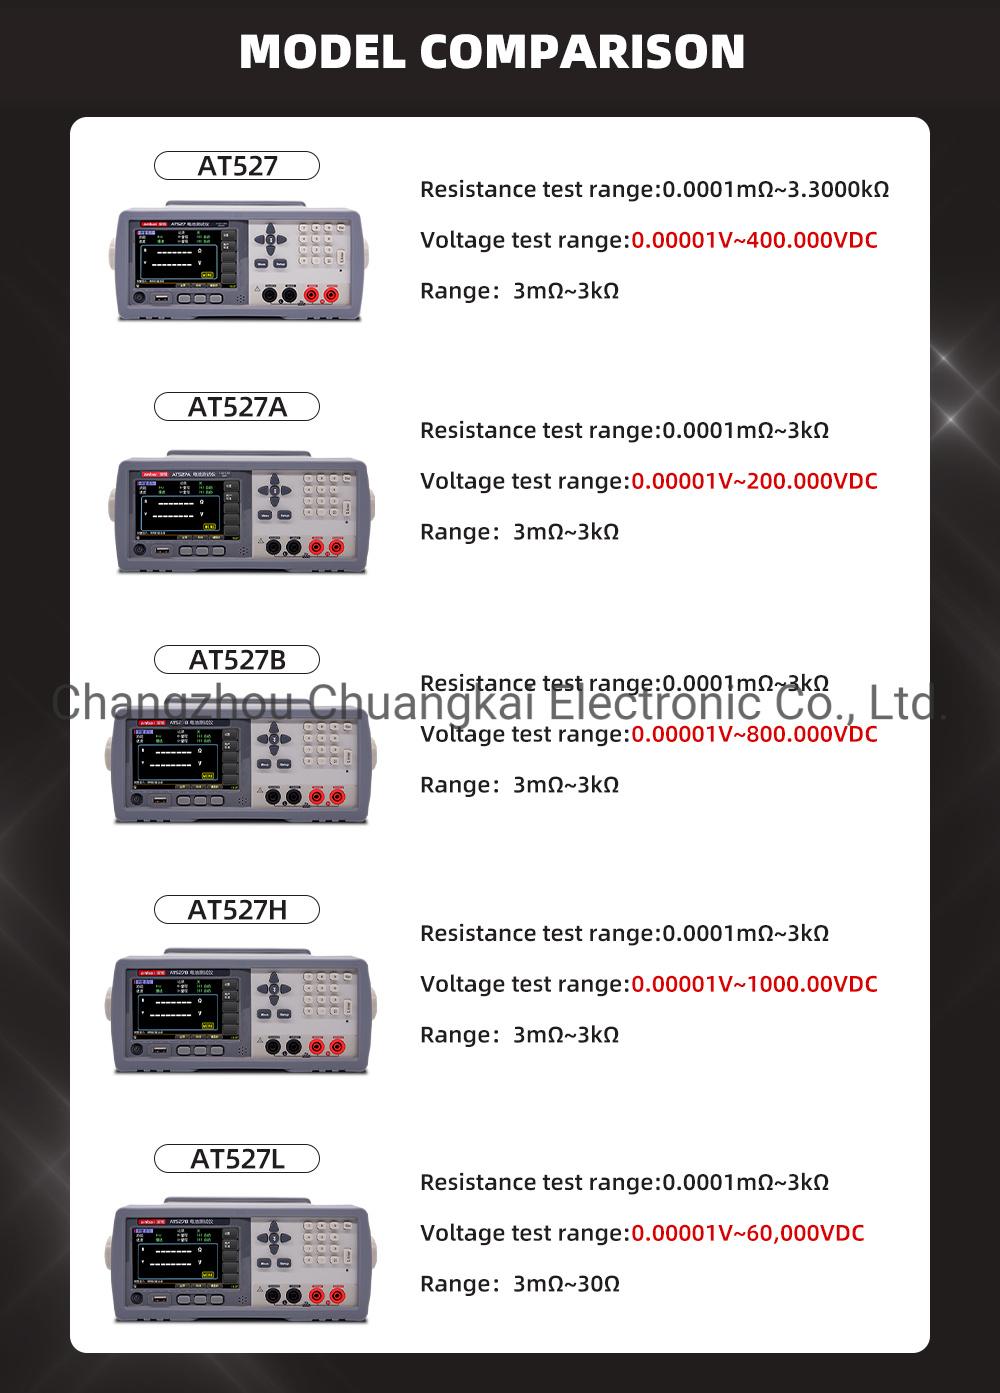 At527A Battery Internal Resistance Meter Voltage Measuring Range 0.00001V~200.000VDC